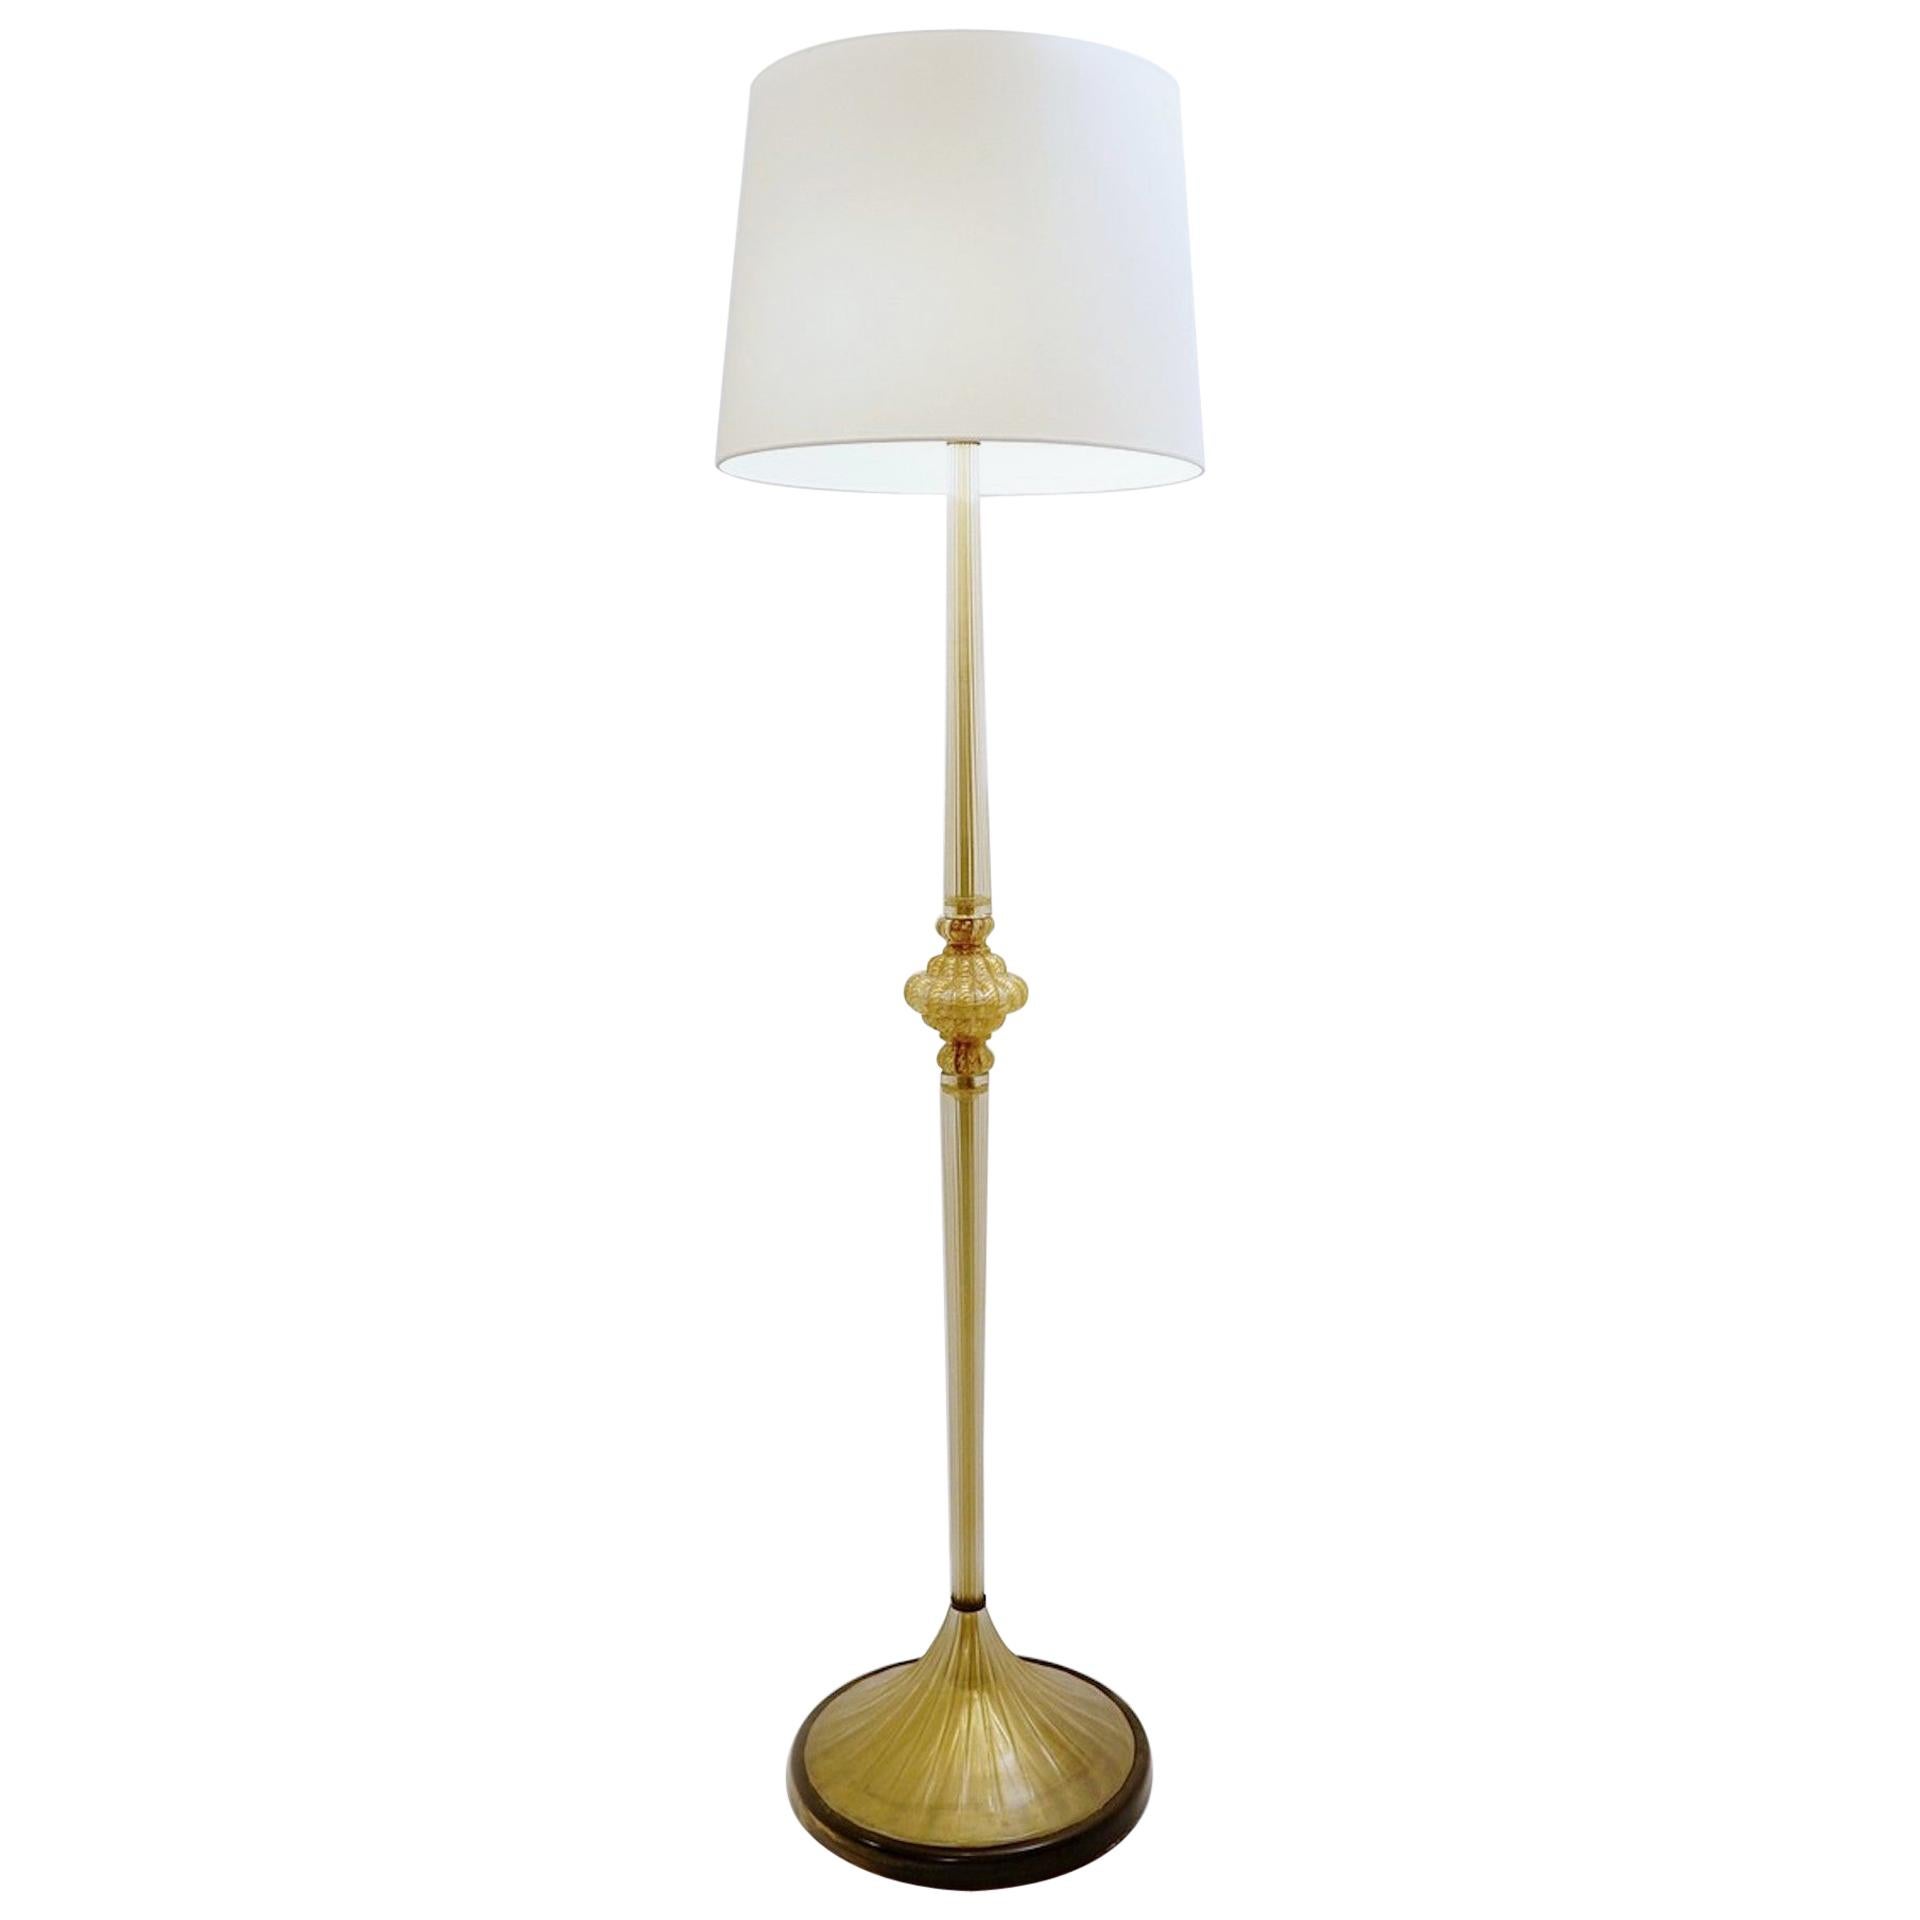 Barovier & Toso ‘Cordonato D’Oro’ Murano Table Lamp, 1950s For Sale